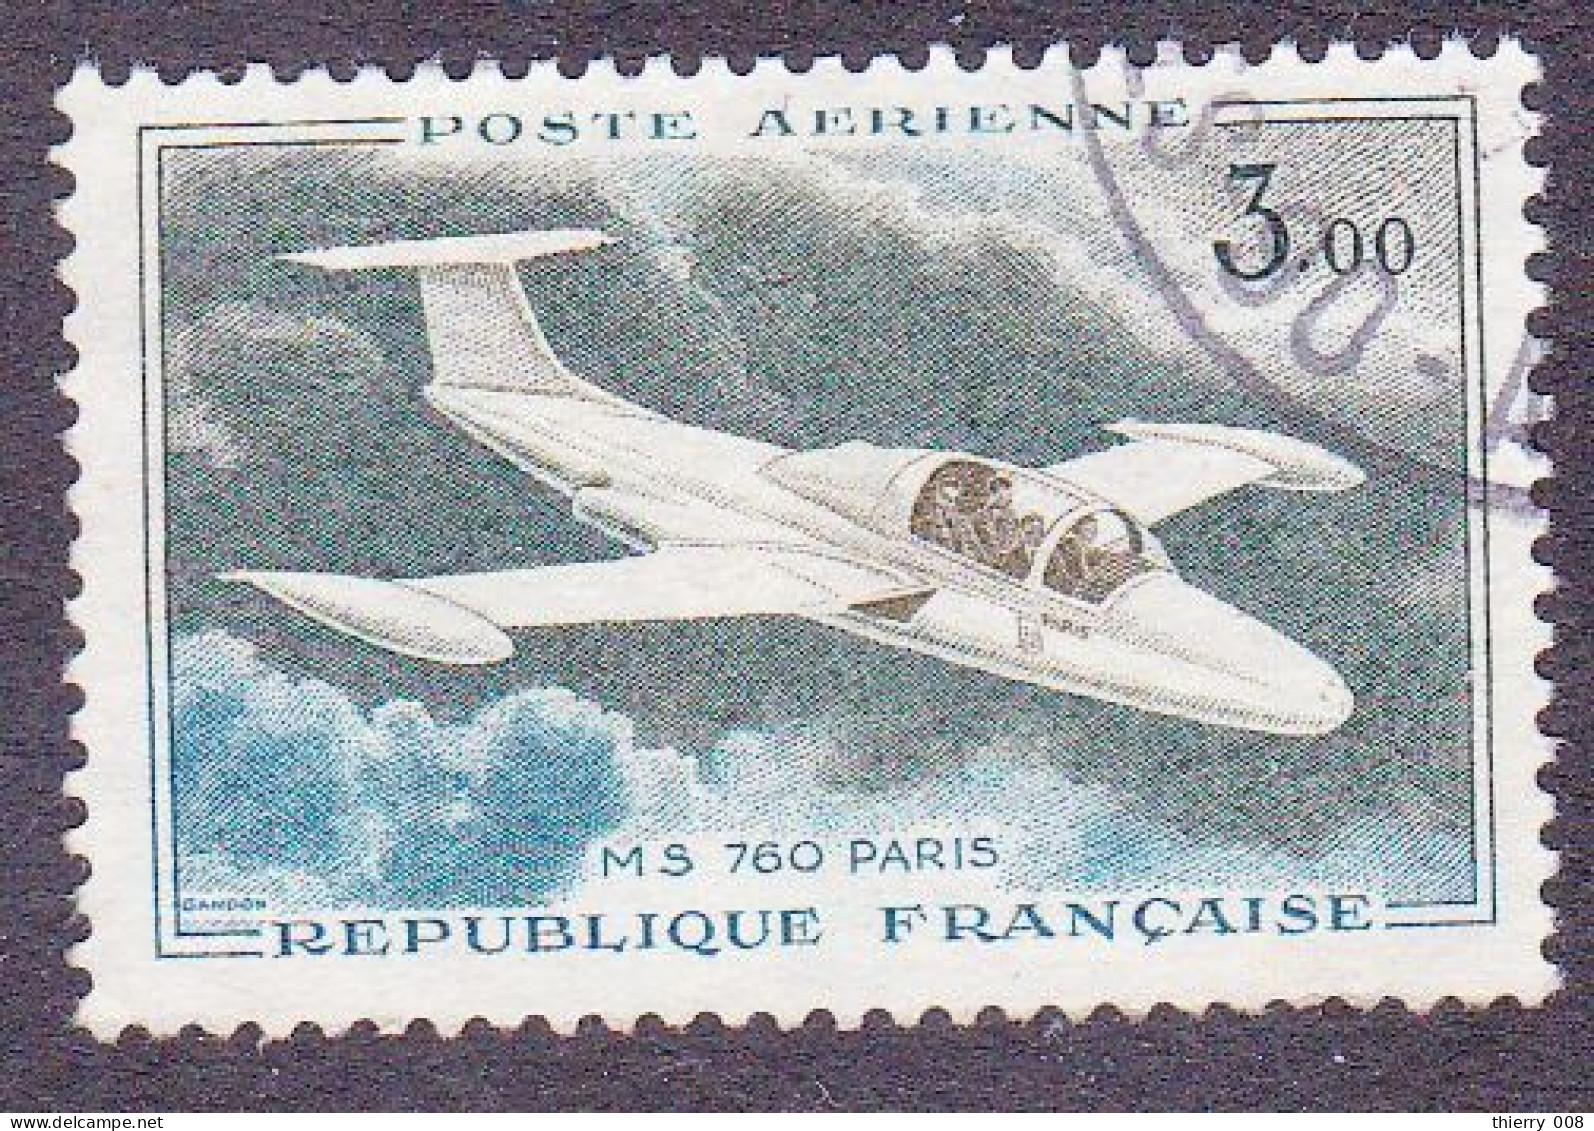 France 1960 1964 Poste Aérienne PA 39 Prototypes Morane Saulnier 760 Paris  Oblitéré - 1960-.... Used